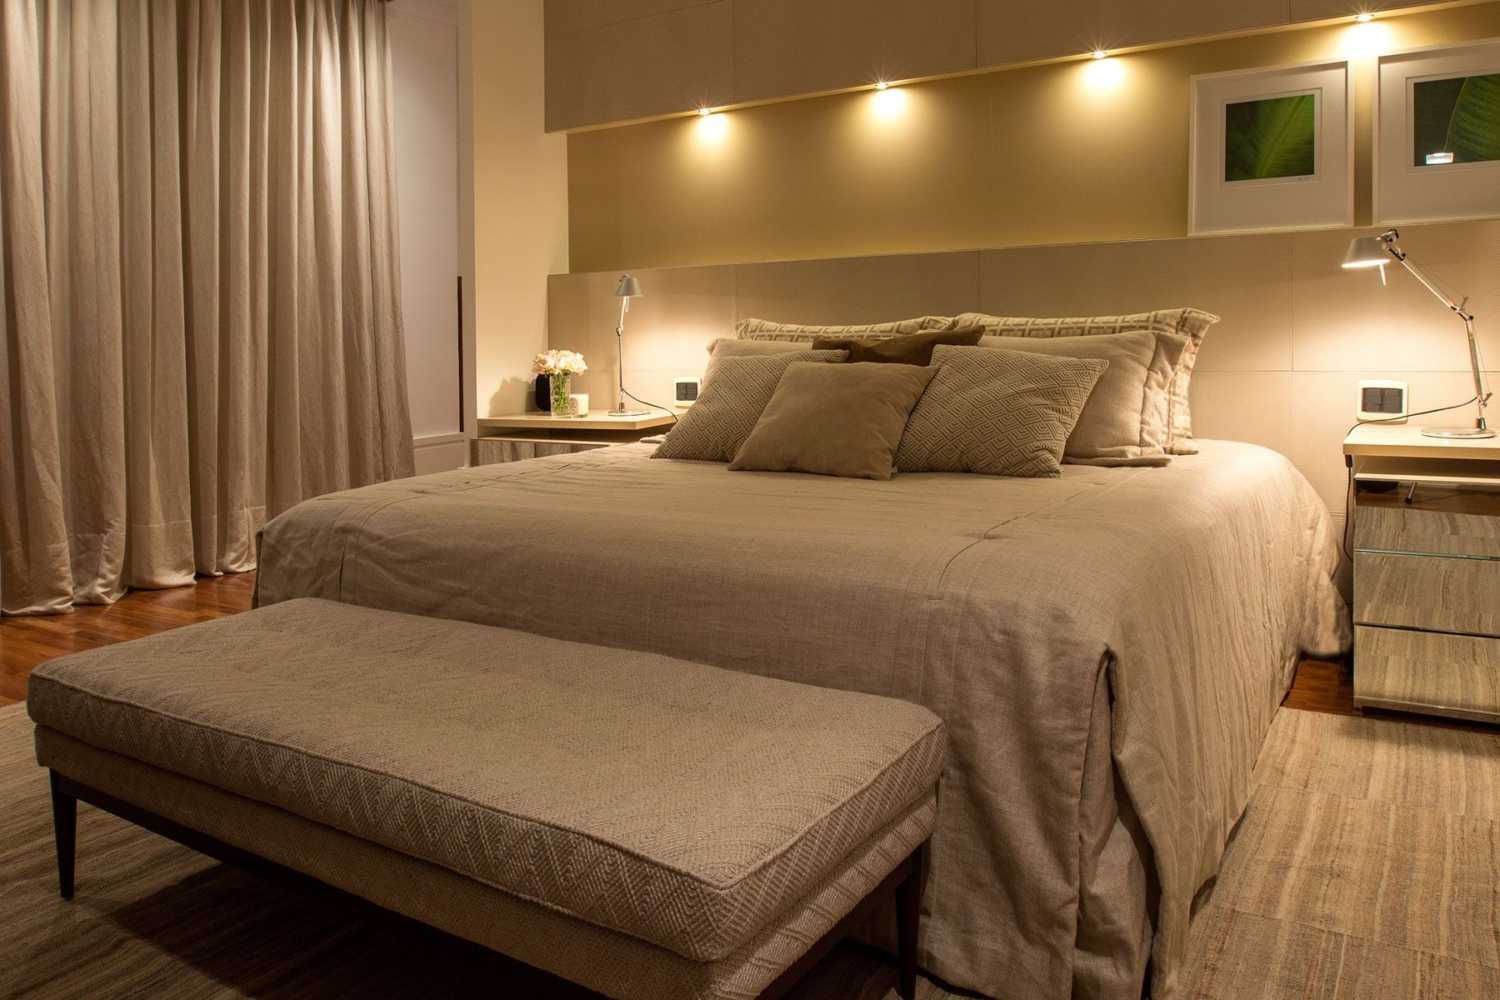 Как правильно подобрать уютное освещение в спальне: белые бра на стену или классическая люстра, комплект или лампочка на прикроватную тумбочку